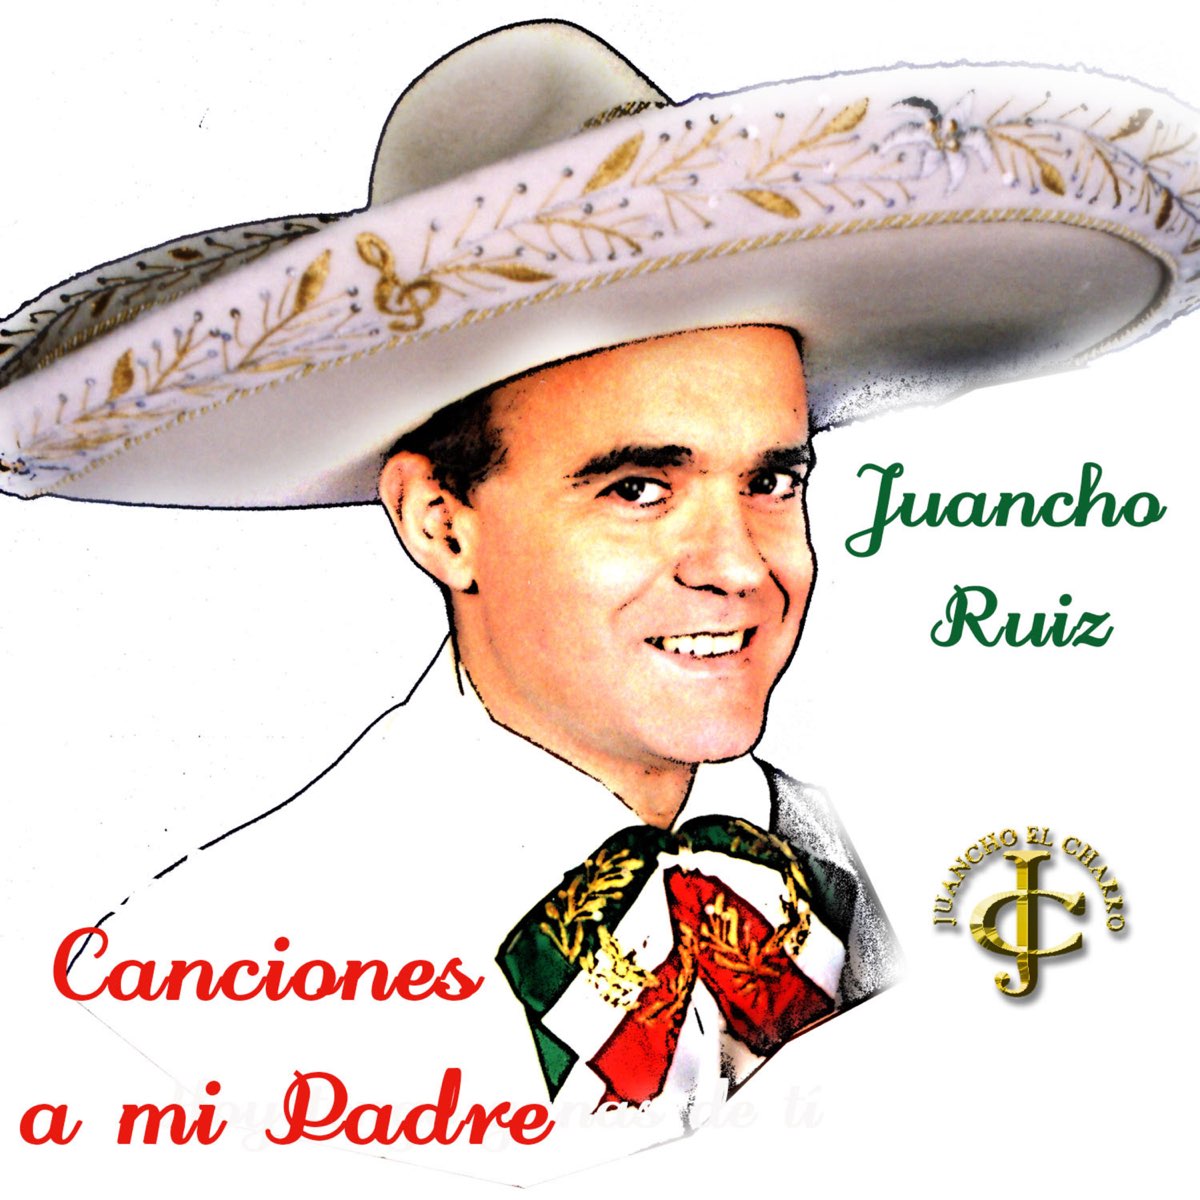 Canciones a mi padre - EP by Juancho Ruiz (El Charro) on Apple Music